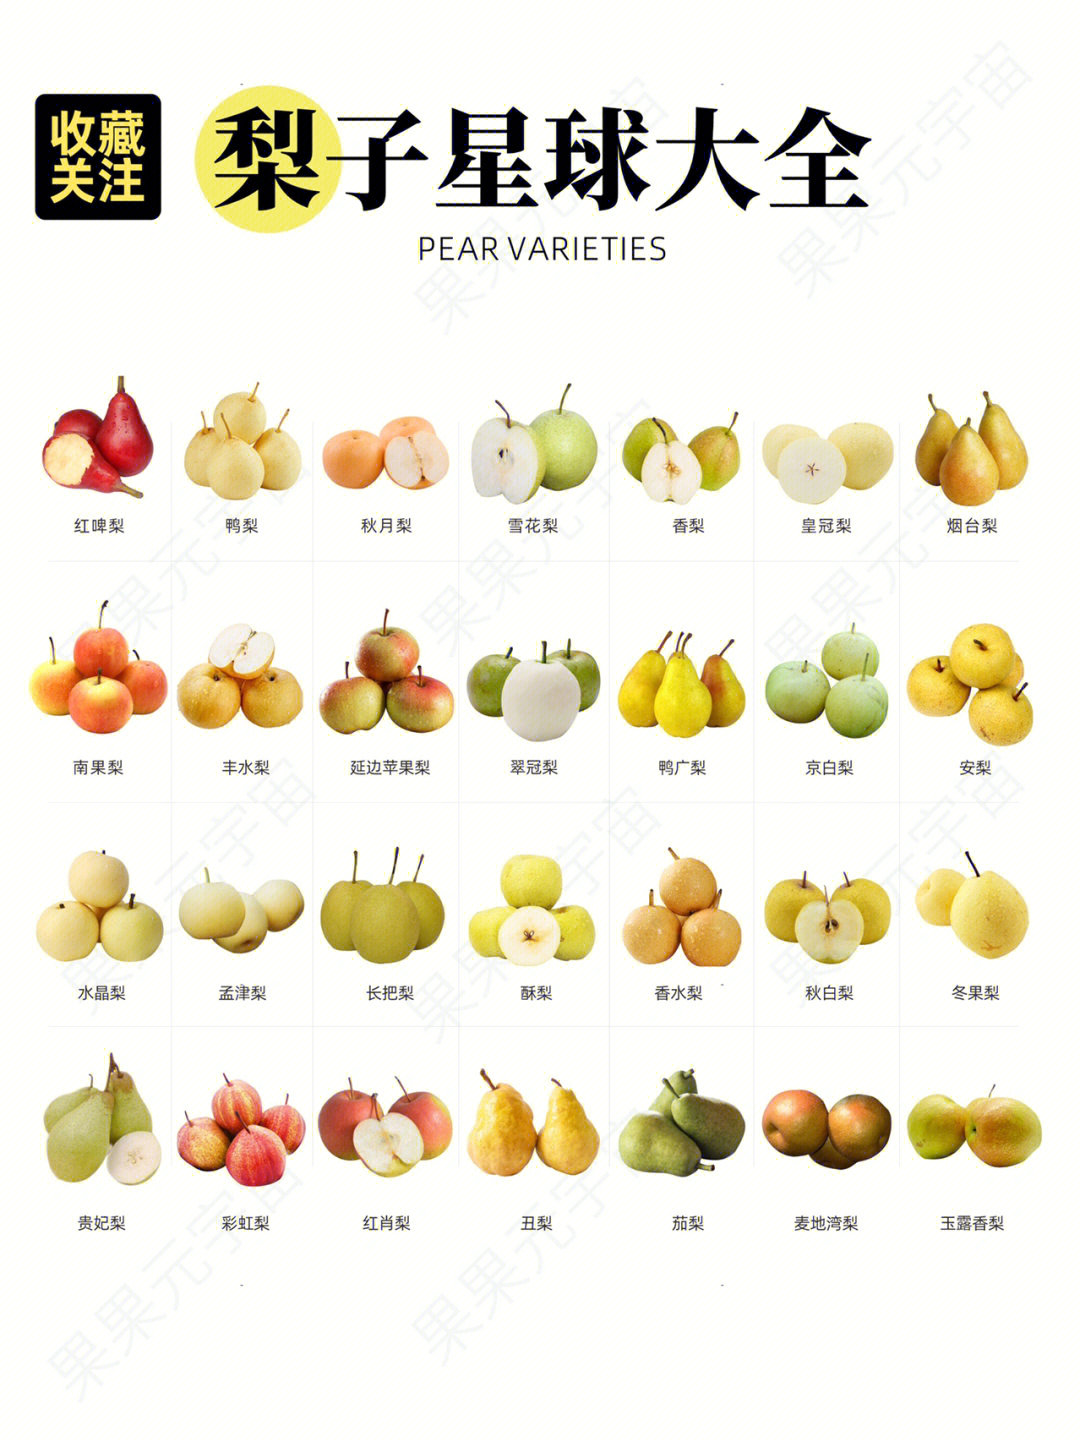 28种梨子科普吃过15种以上的都是资深玩家